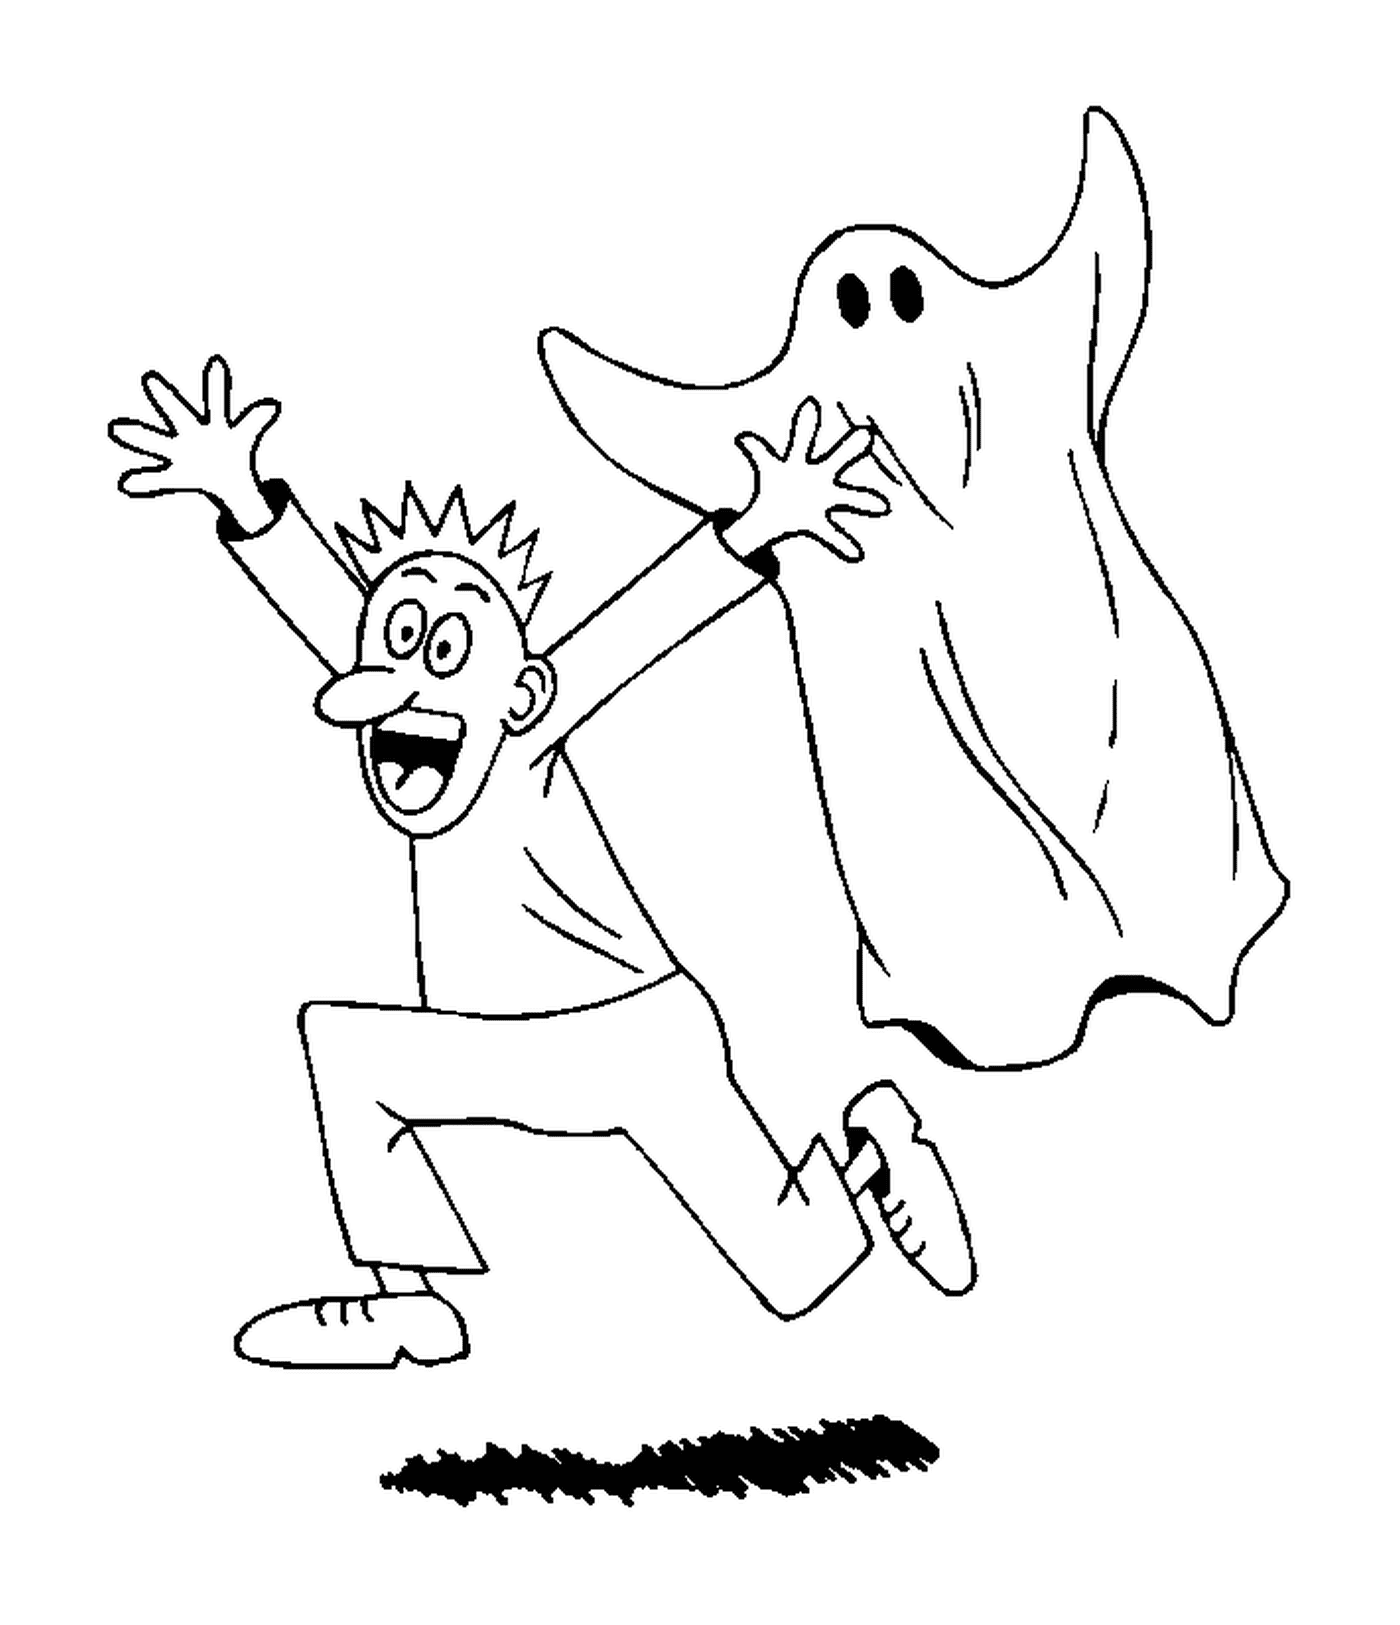  Um ser humano perseguido por um fantasma 